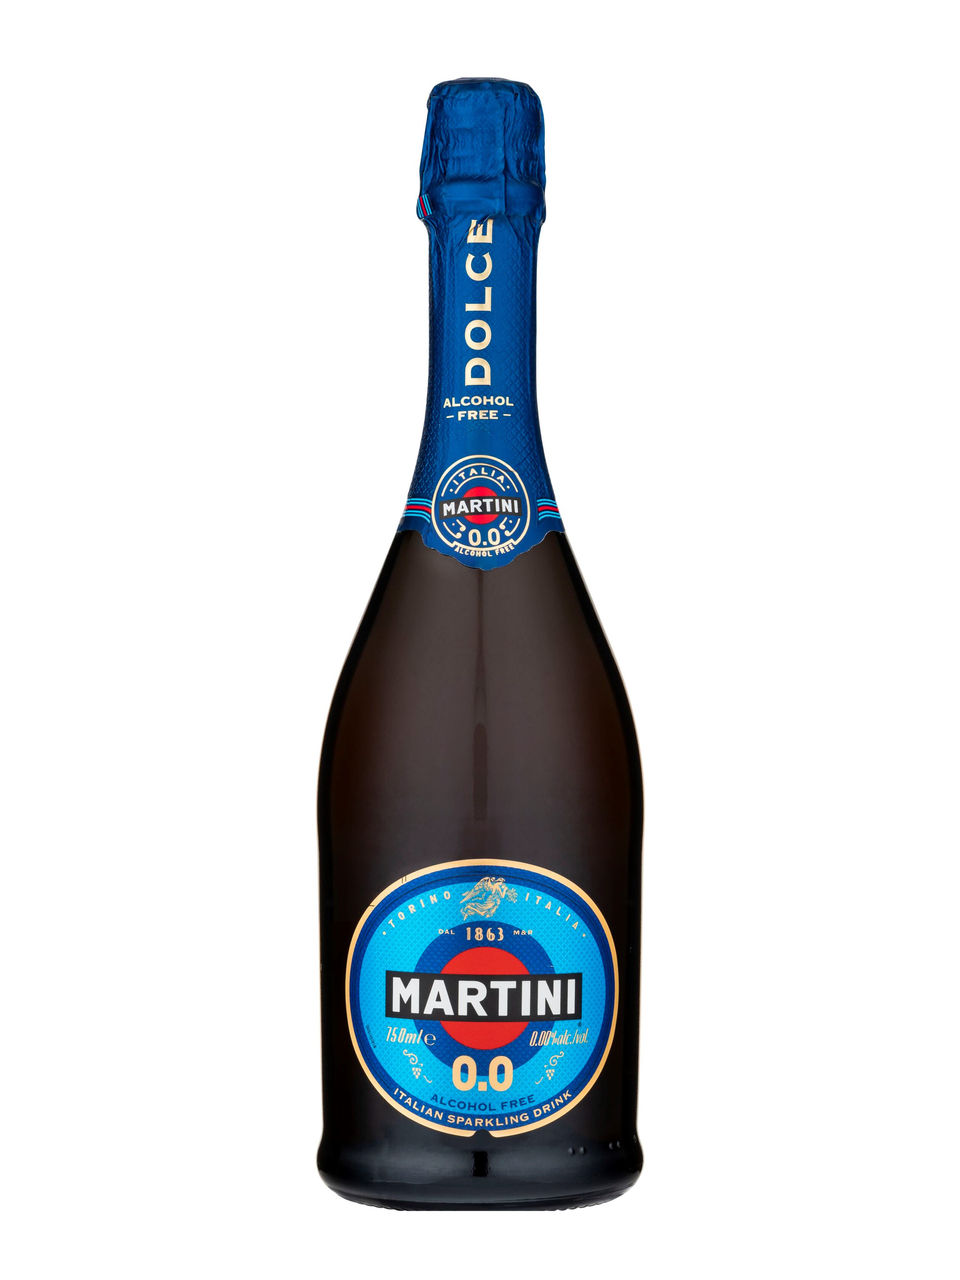 Sorepca - Avez vous déjà découvert notre nouvelle référence de Martini sans  alcool ? Martini Dolce 0.0 est une boisson pétillante élégante et  rafraîchissante parfaite, pour ceux qui ne consomment pas d'alcool.